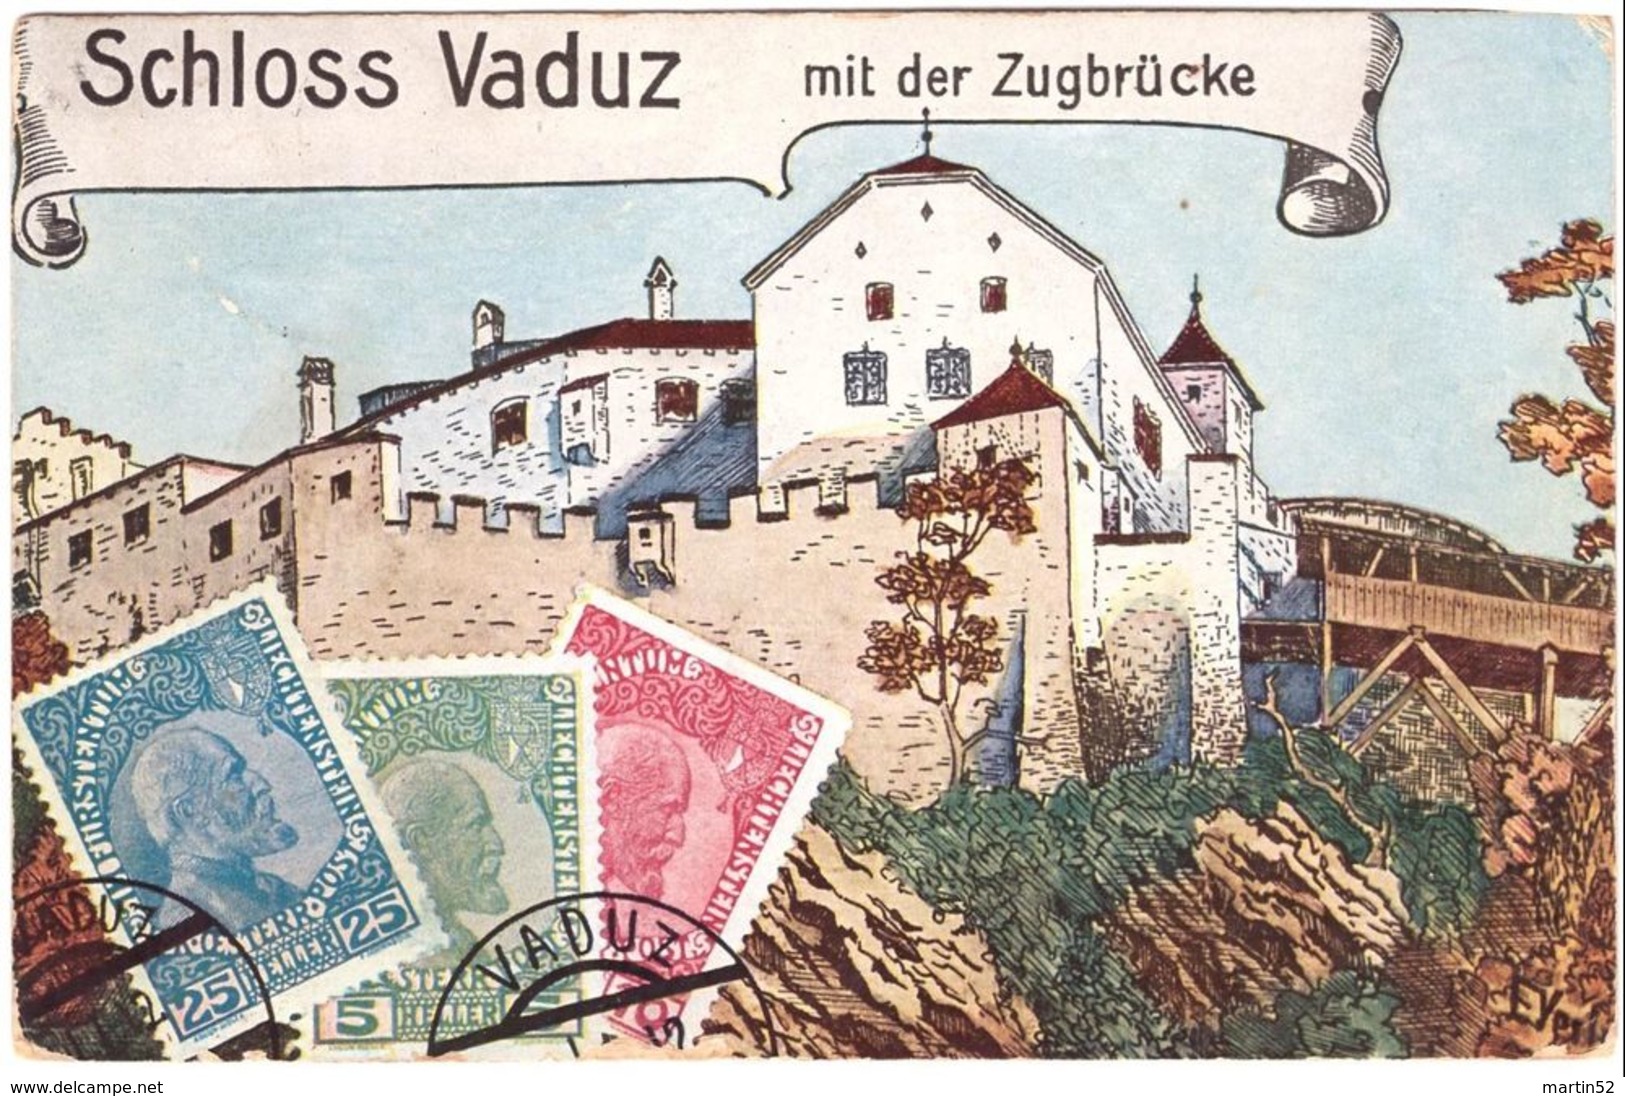 Liechtenstein 1920: CPI PK "Schloss Vaduz" MITLÄUFER Mi 231 "Deutschösterreich" O VADUZ *b* > Mauren (LBK CHF 120.00) - ...-1912 Voorlopers